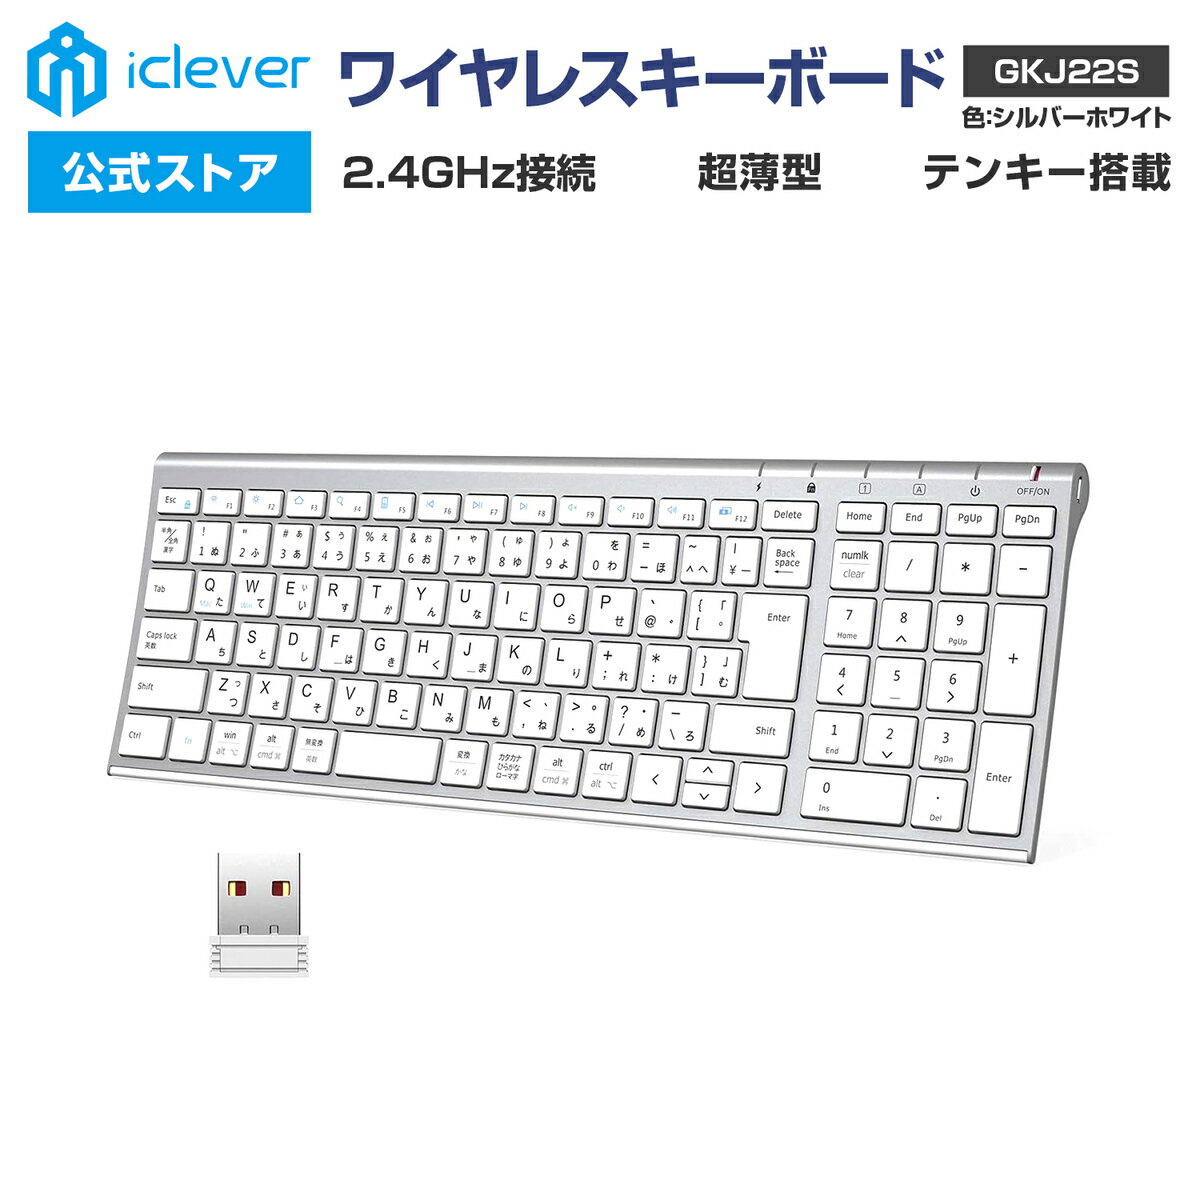 【iClever公式】 ワイヤレスキーボード GKJ22S 人気 話題 2.4GHz接続 USBレシーバー接続 テンキー搭載 日本語配列 超薄型 パンタグラフ式 スタイリッシュ ガジェット コスパ レビューキャンペーン 父の日